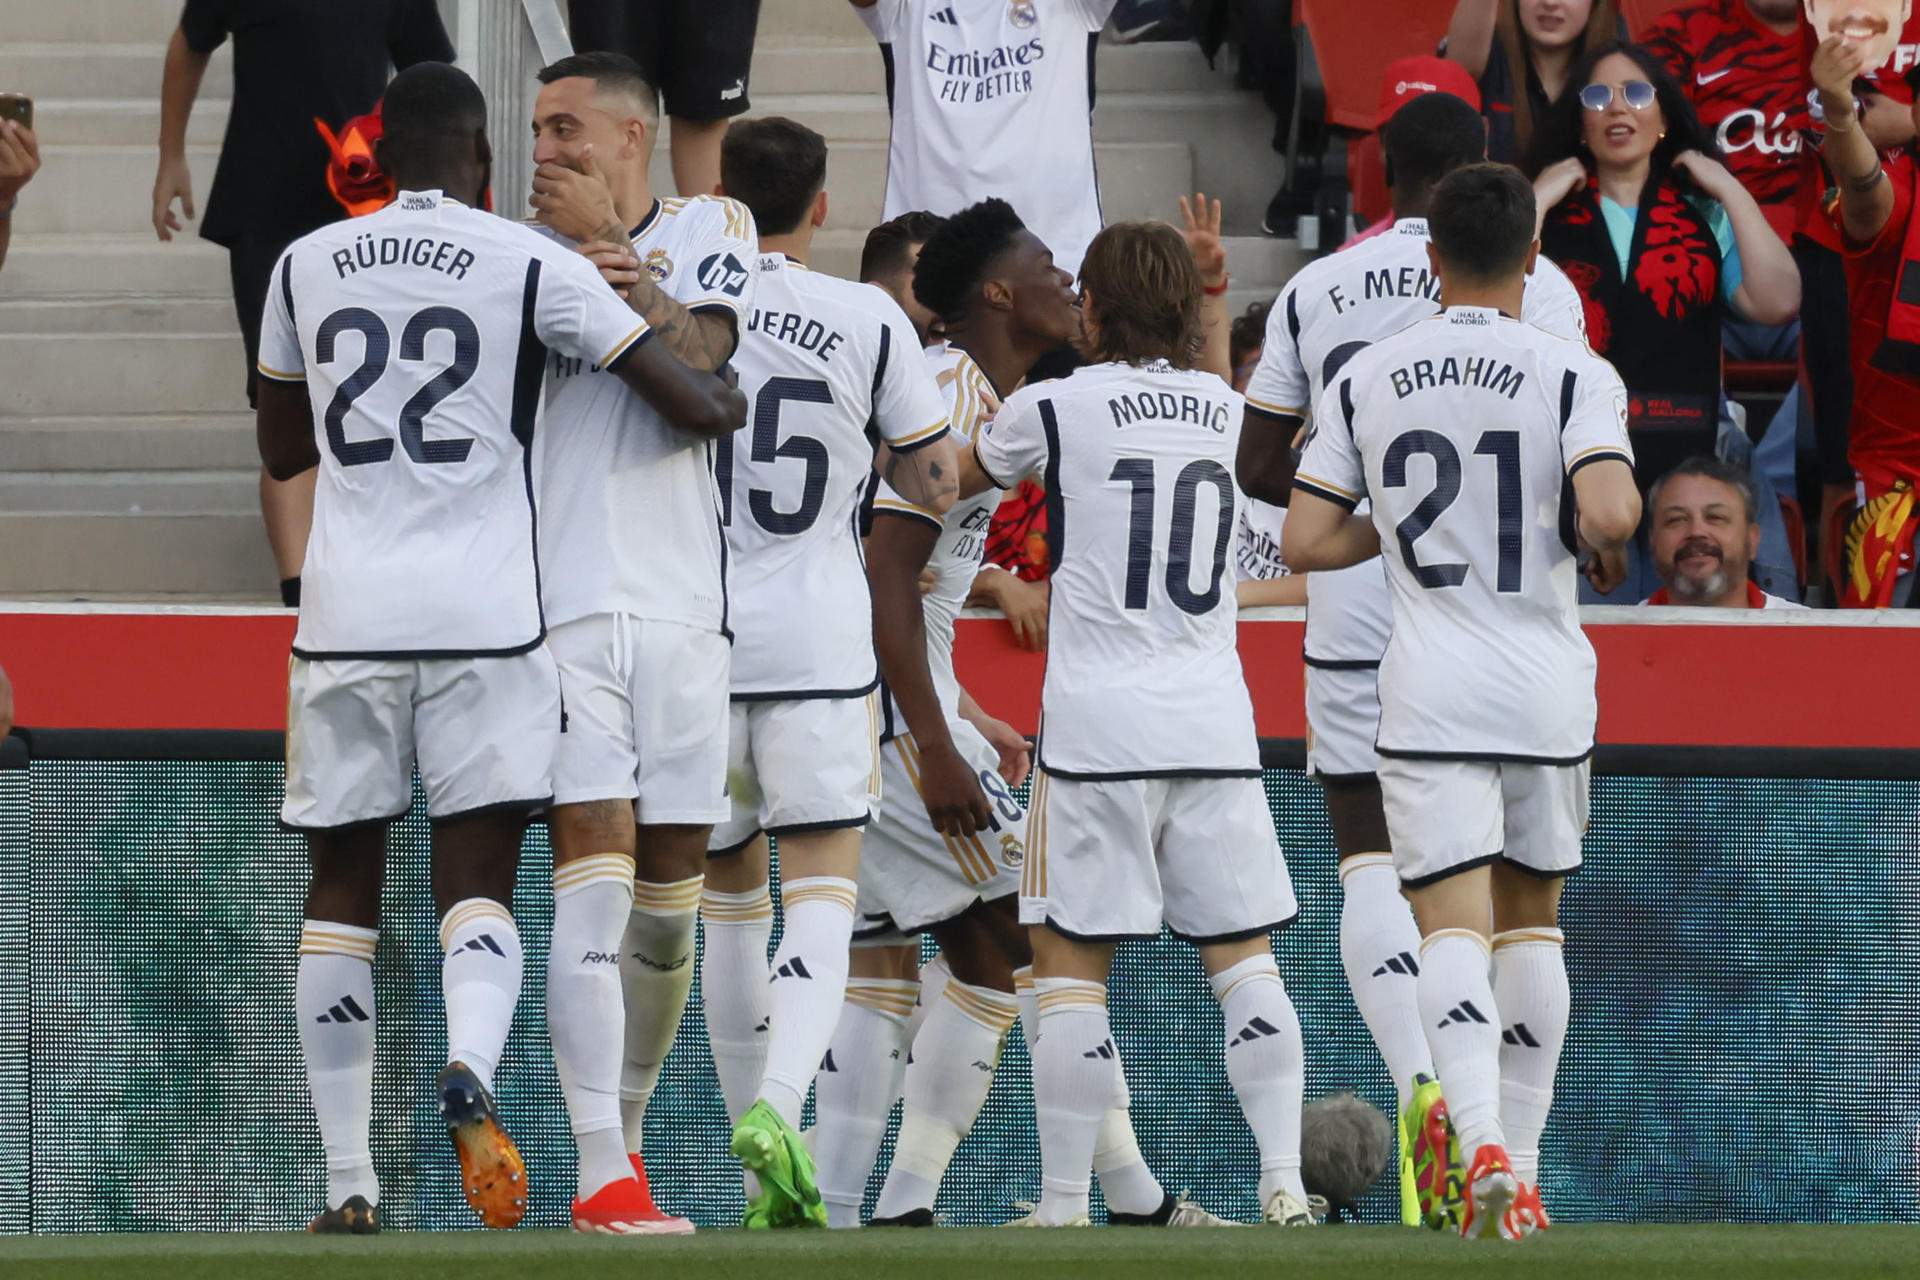 El Real Madrid salva un partido trampa en Mallorca (1-0) para consolidar el liderato a una semana del Clásico